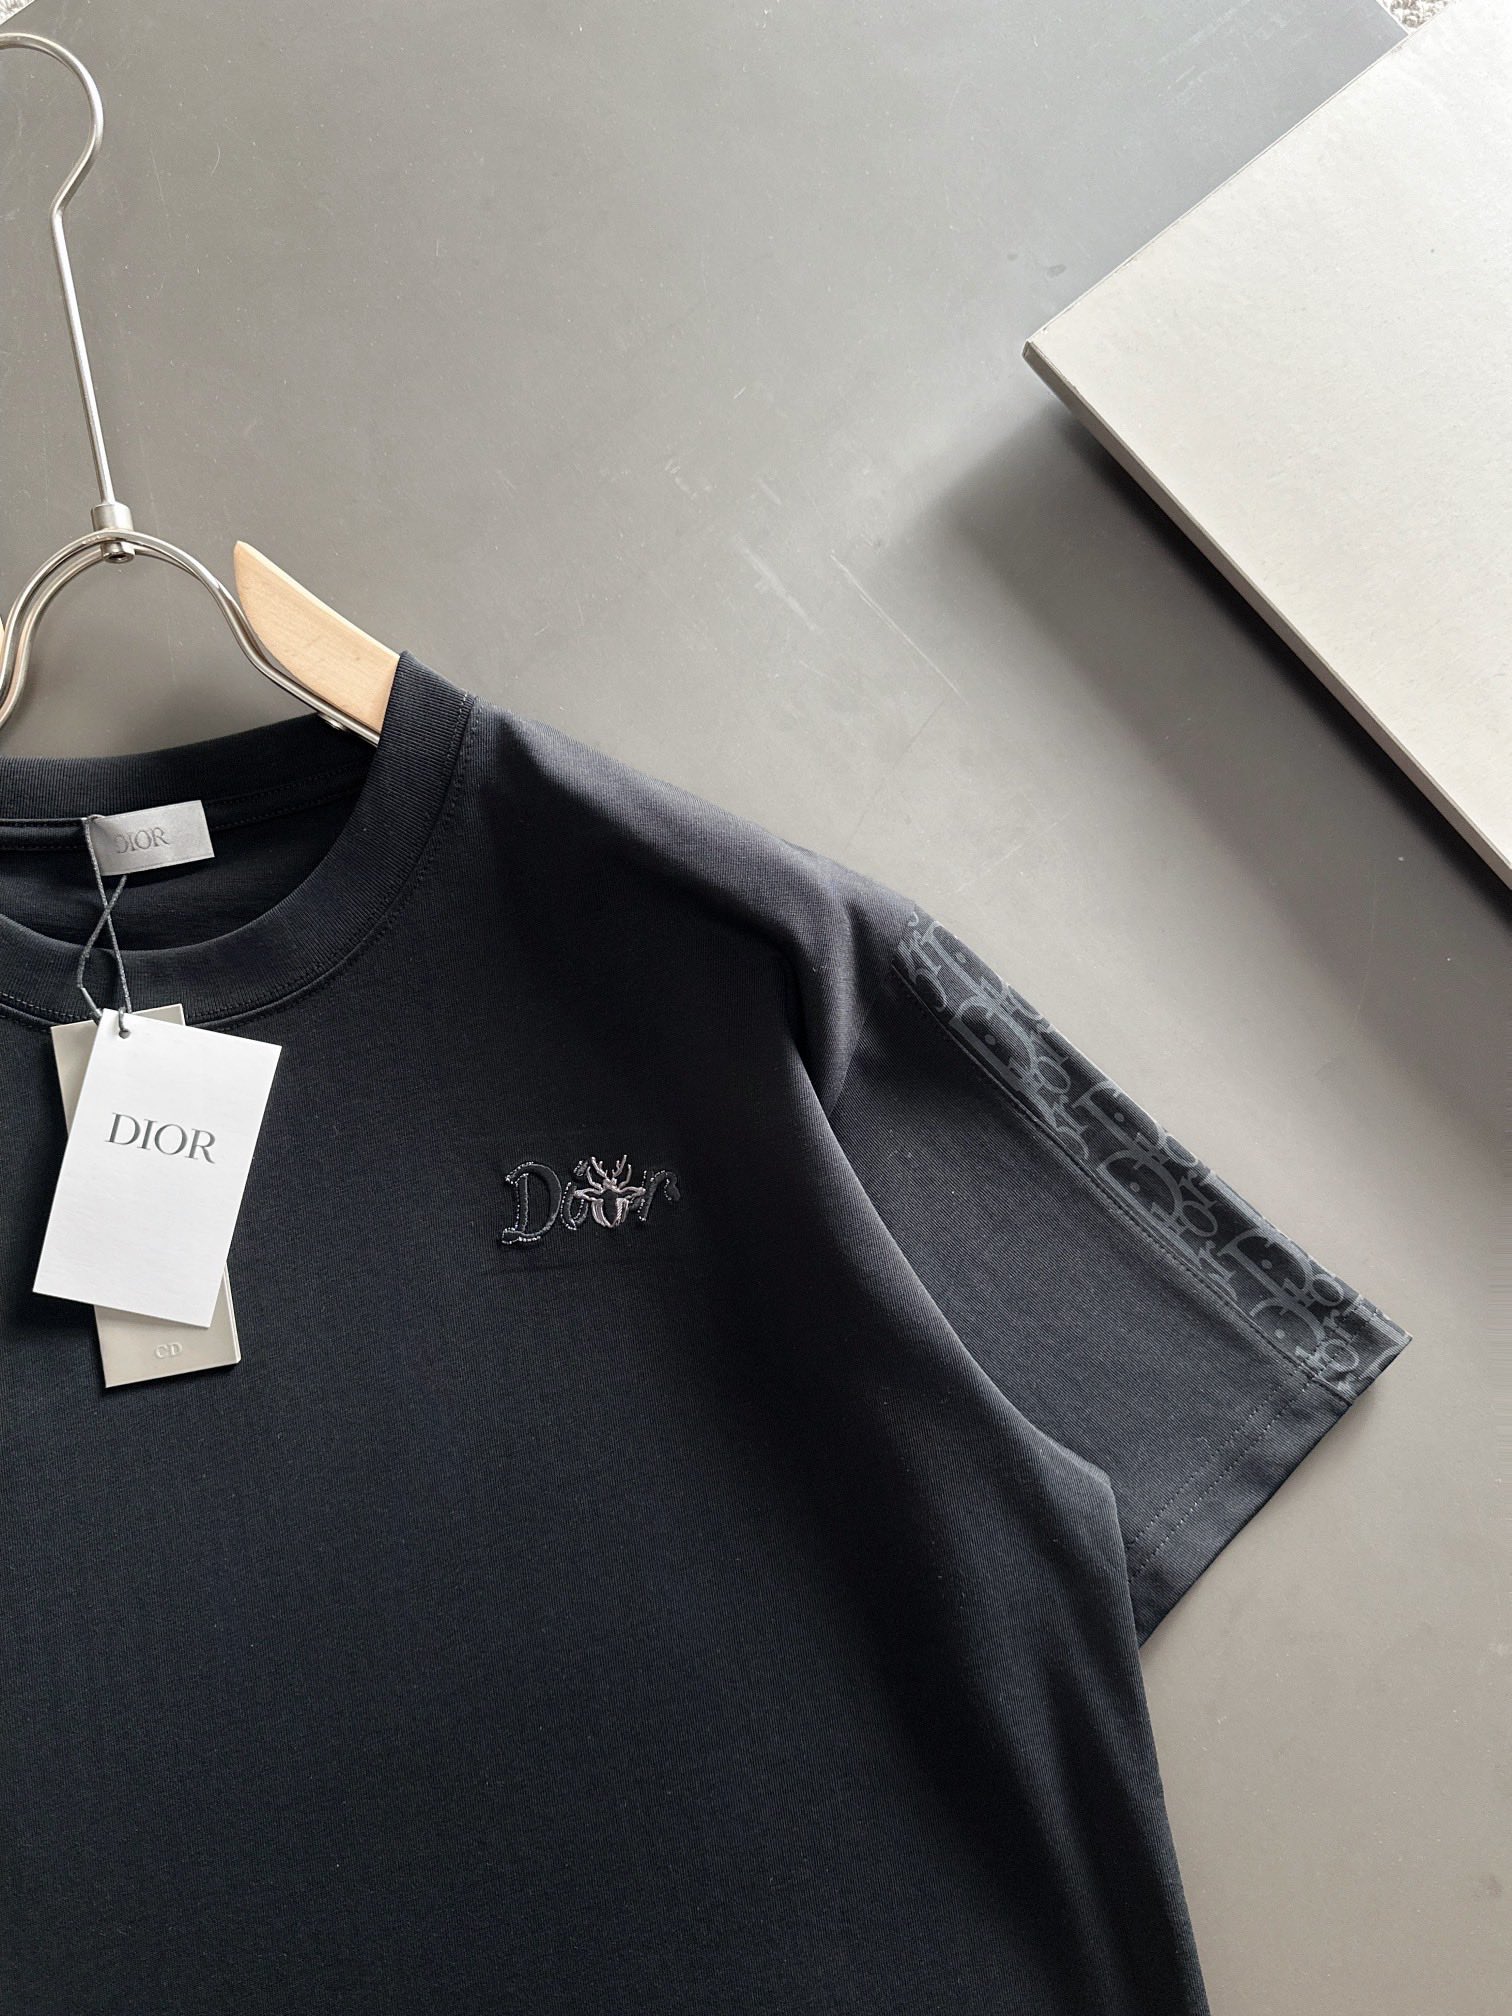 爆買い大得価 ディオール tシャツ激安通販 短袖 品質保証 トップス 純綿 シンプル 人気新品 柔らかい ブラック_2